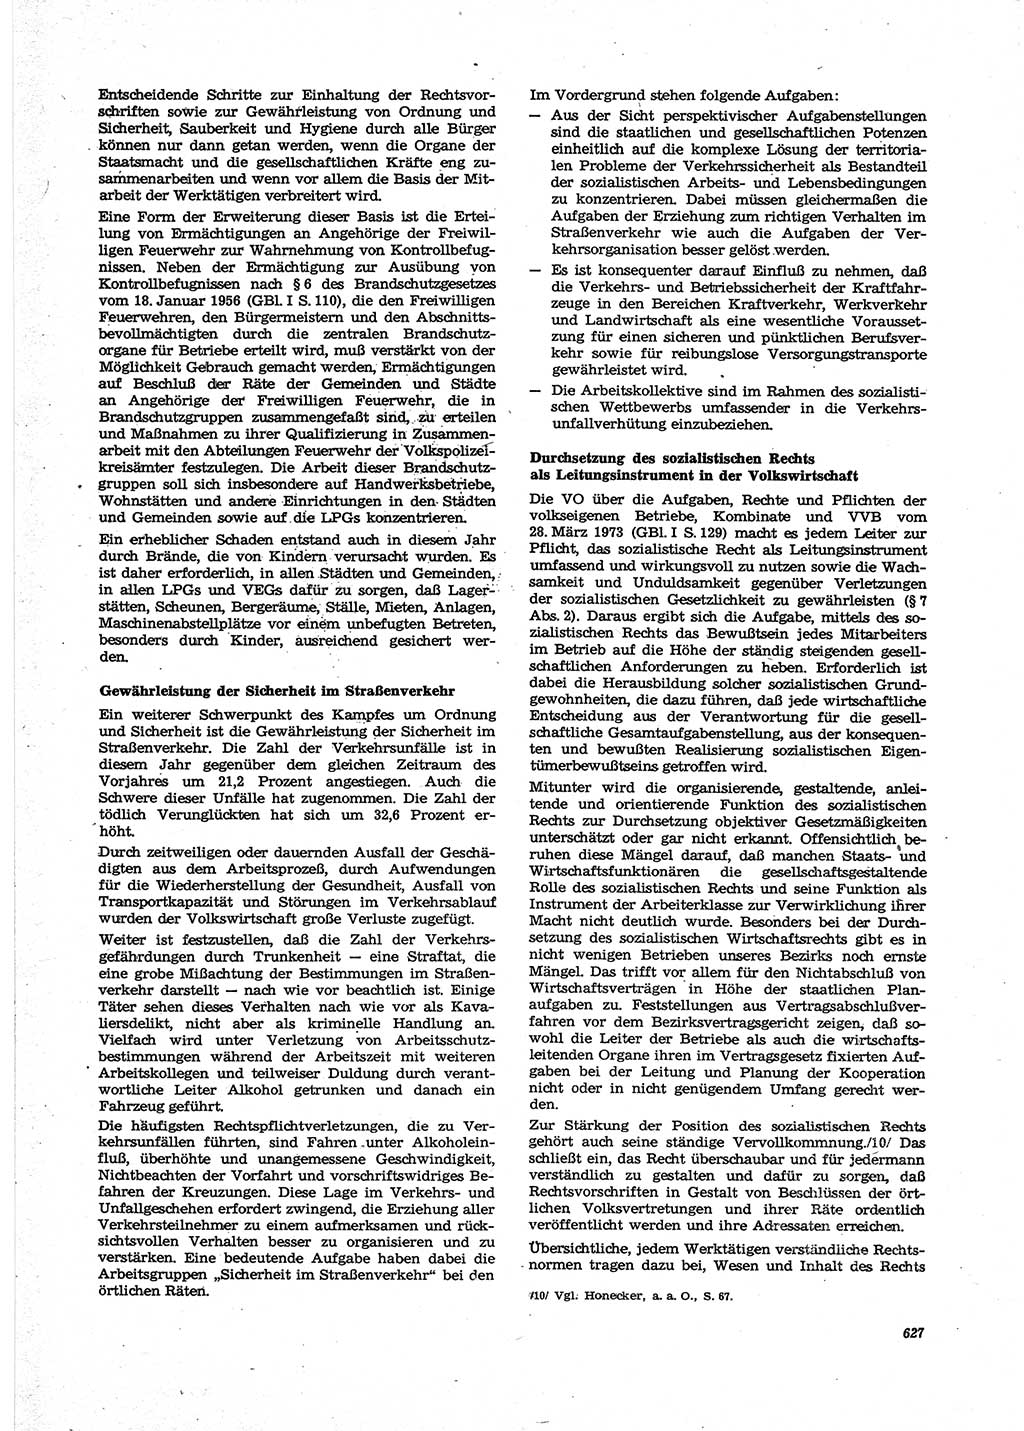 Neue Justiz (NJ), Zeitschrift für Recht und Rechtswissenschaft [Deutsche Demokratische Republik (DDR)], 27. Jahrgang 1973, Seite 627 (NJ DDR 1973, S. 627)